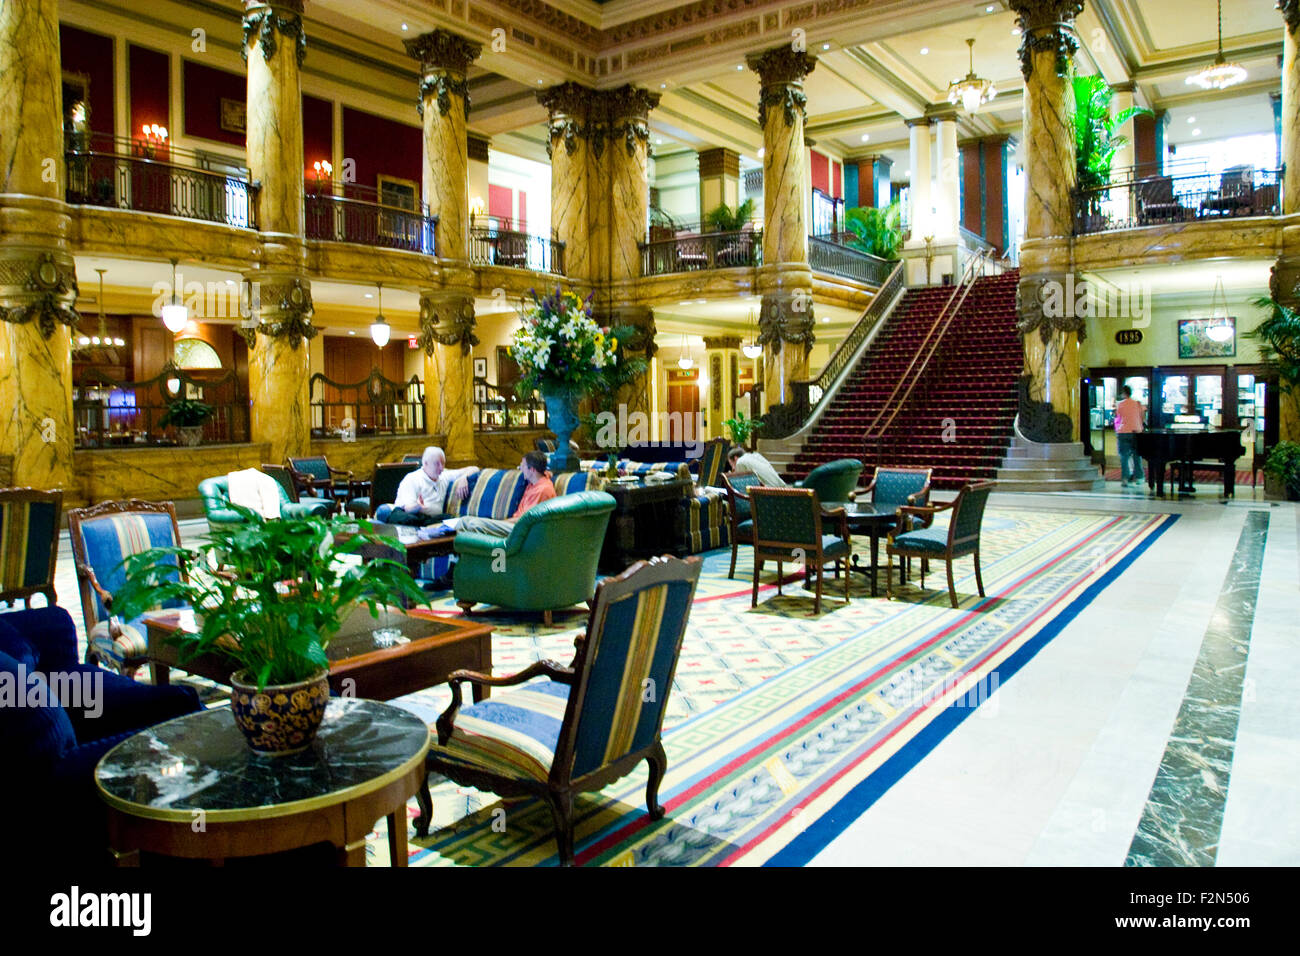 Dal 1895 il 5 stelle, 5 diamond Jefferson Hotel è rimasto uno dei paesi più imponente hotel, Richmond, Virginia Foto Stock